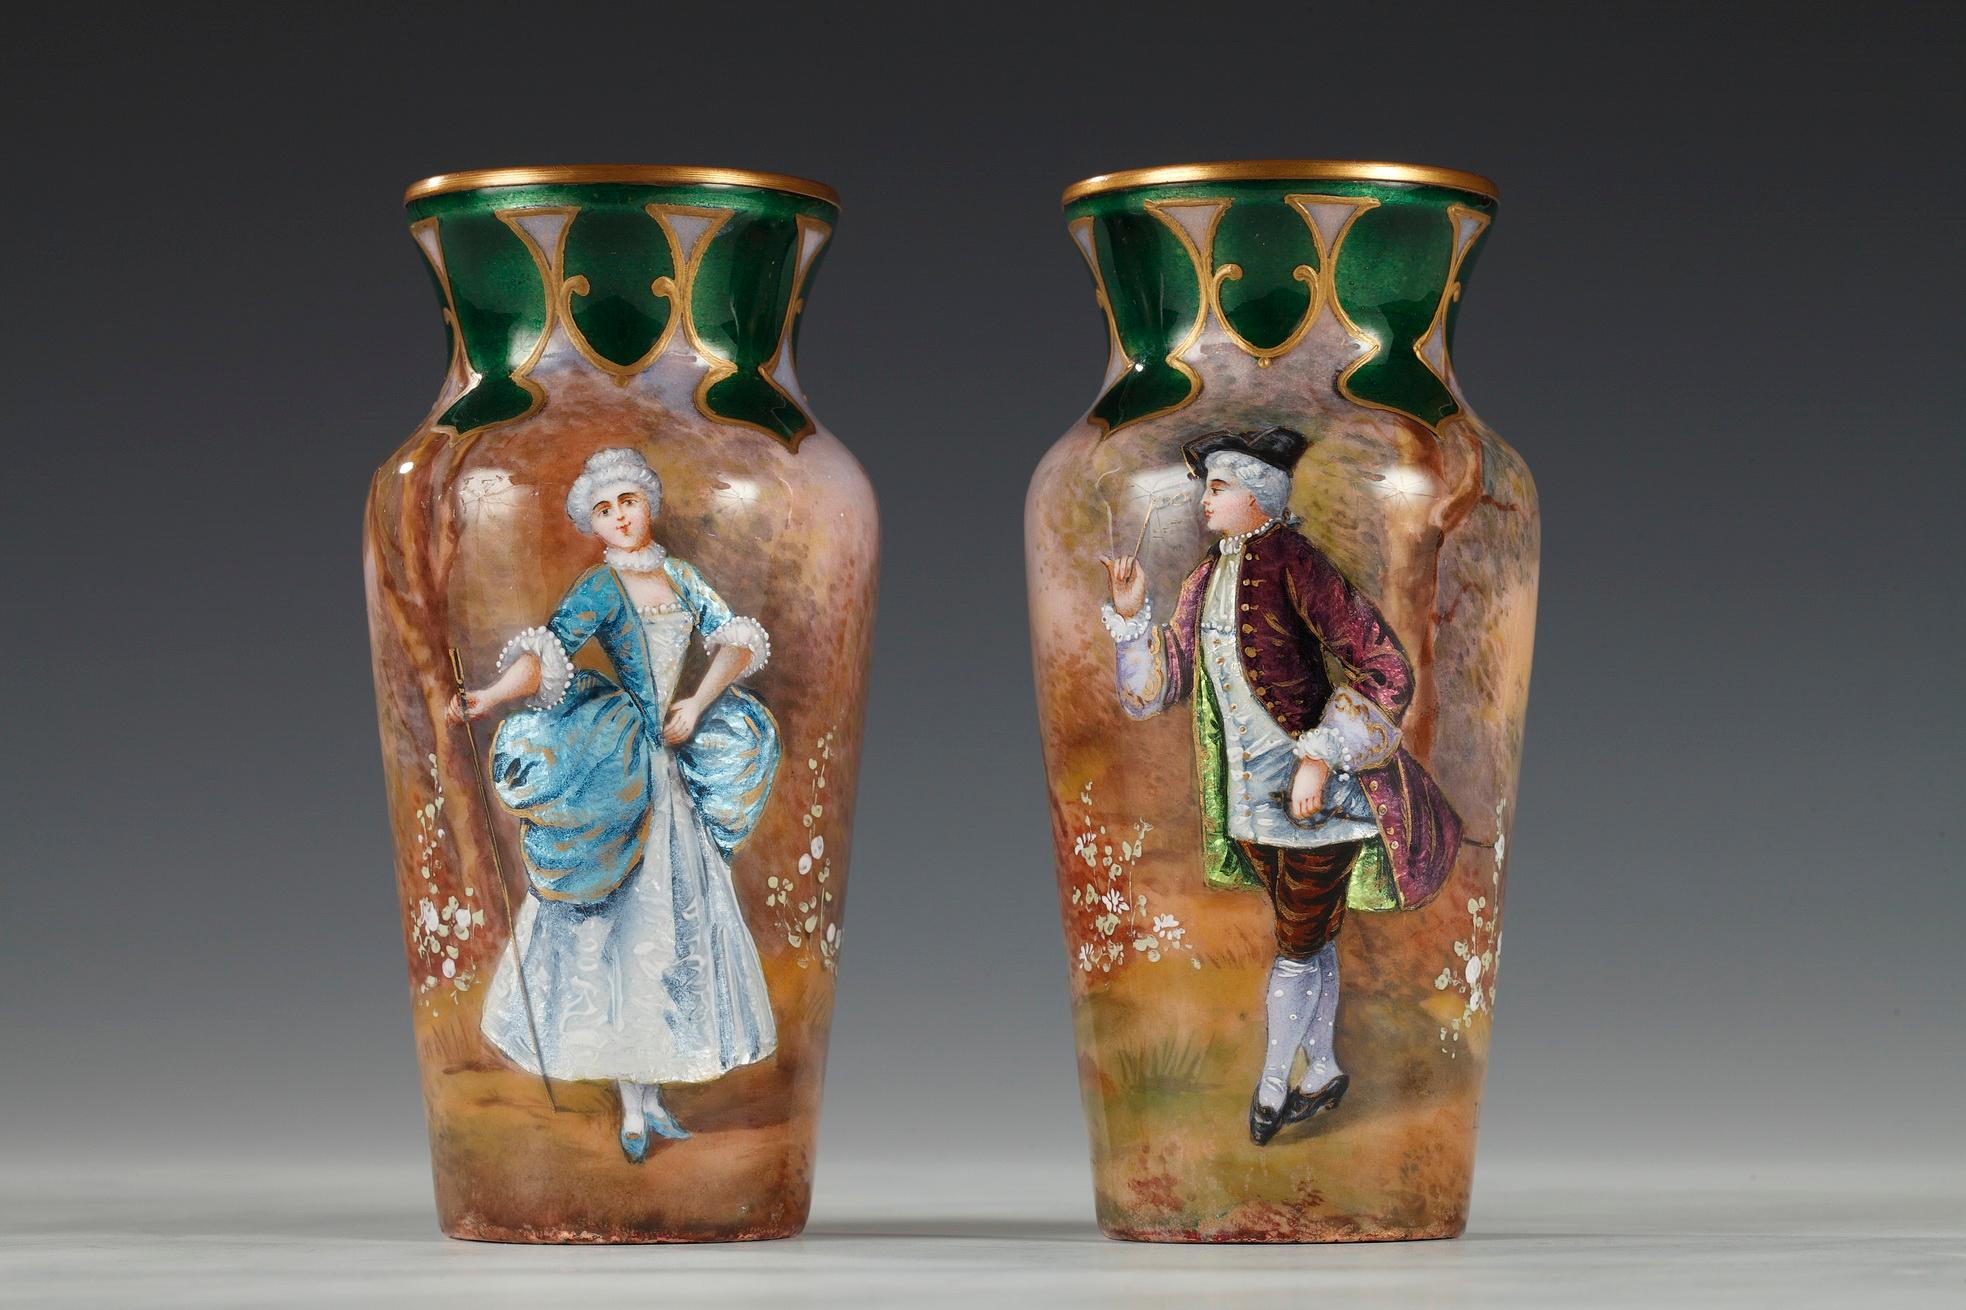 Charmantes Paar Vasen mit engem Hals aus Limoges, emailliert auf Kupfer, mit galanten Figuren, dem Marquis und der Marquise.